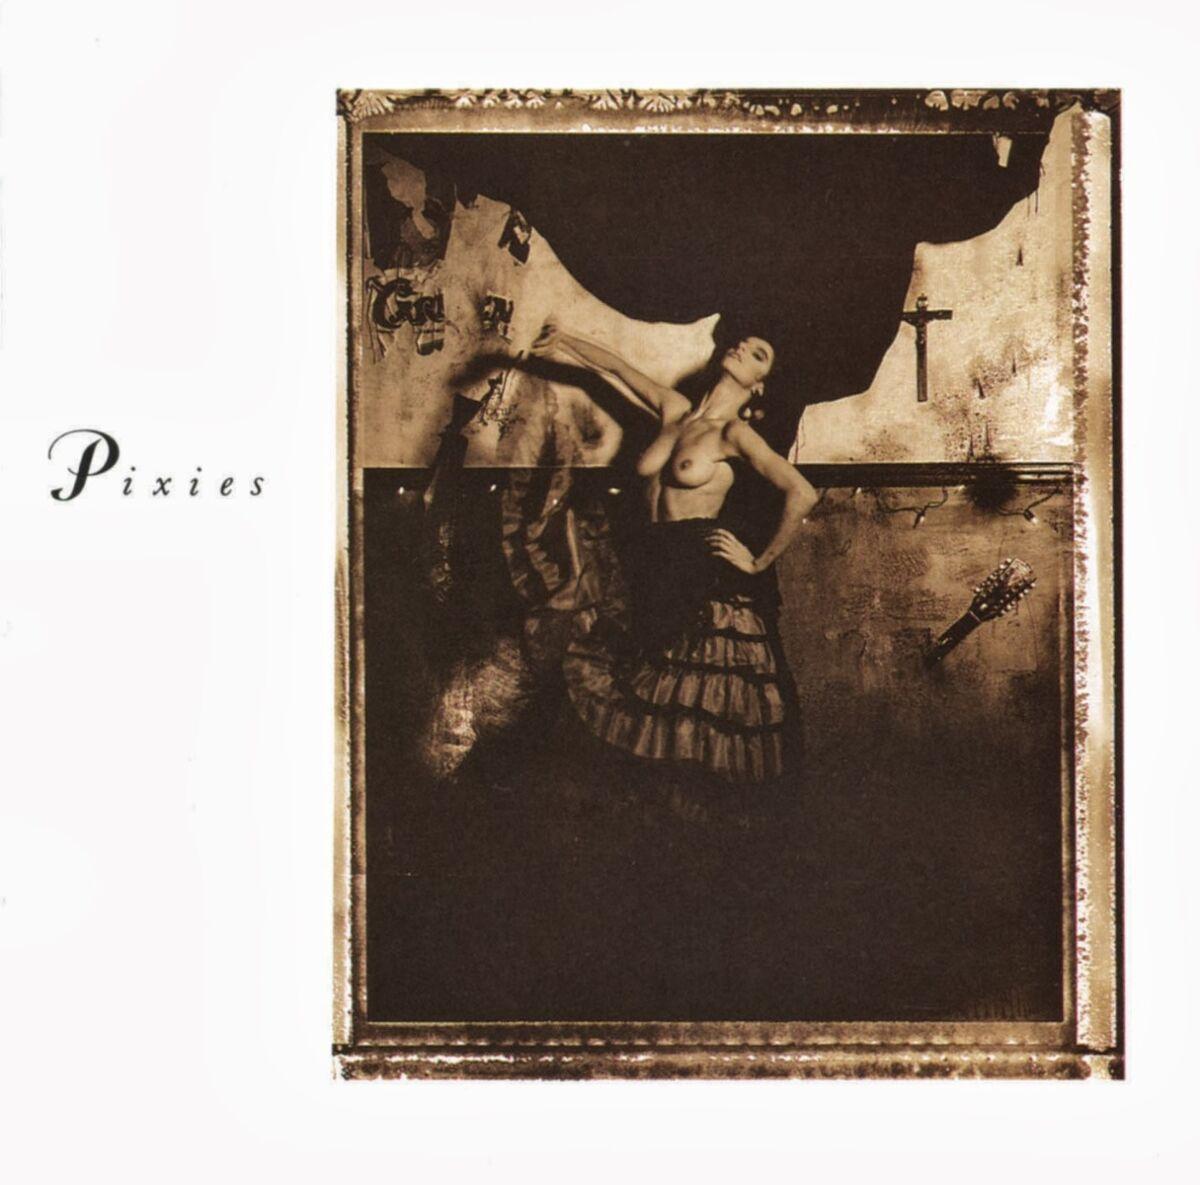 Pixies Surfer Rosa LP